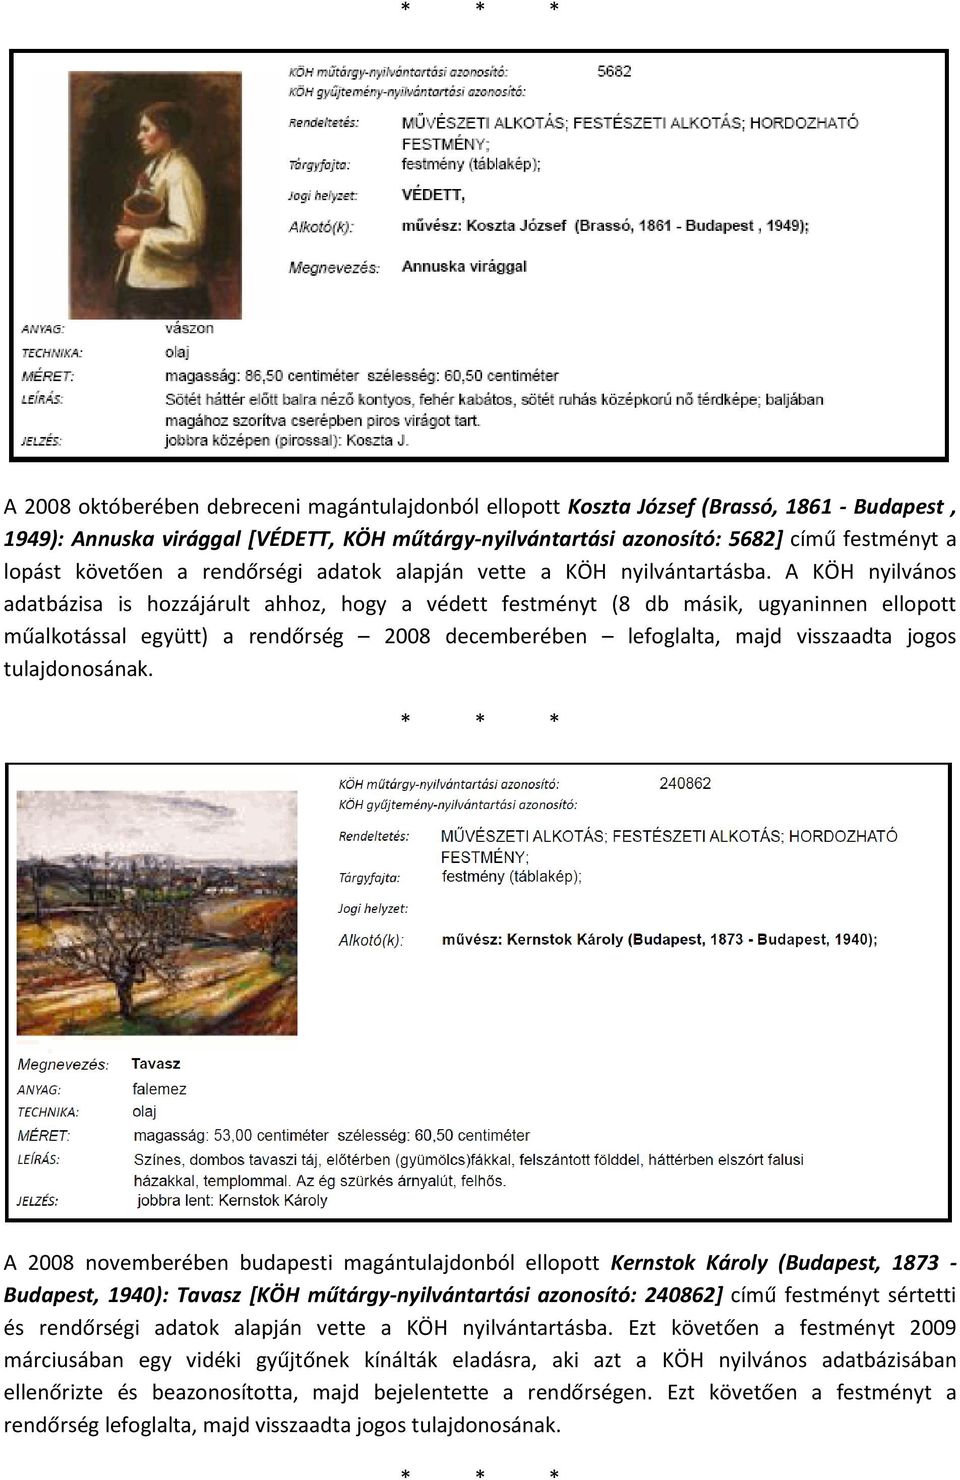 A KÖH nyilvános adatbázisa is hozzájárult ahhoz, hogy a védett festményt (8 db másik, ugyaninnen ellopott műalkotással együtt) a rendőrség 2008 decemberében lefoglalta, majd visszaadta jogos